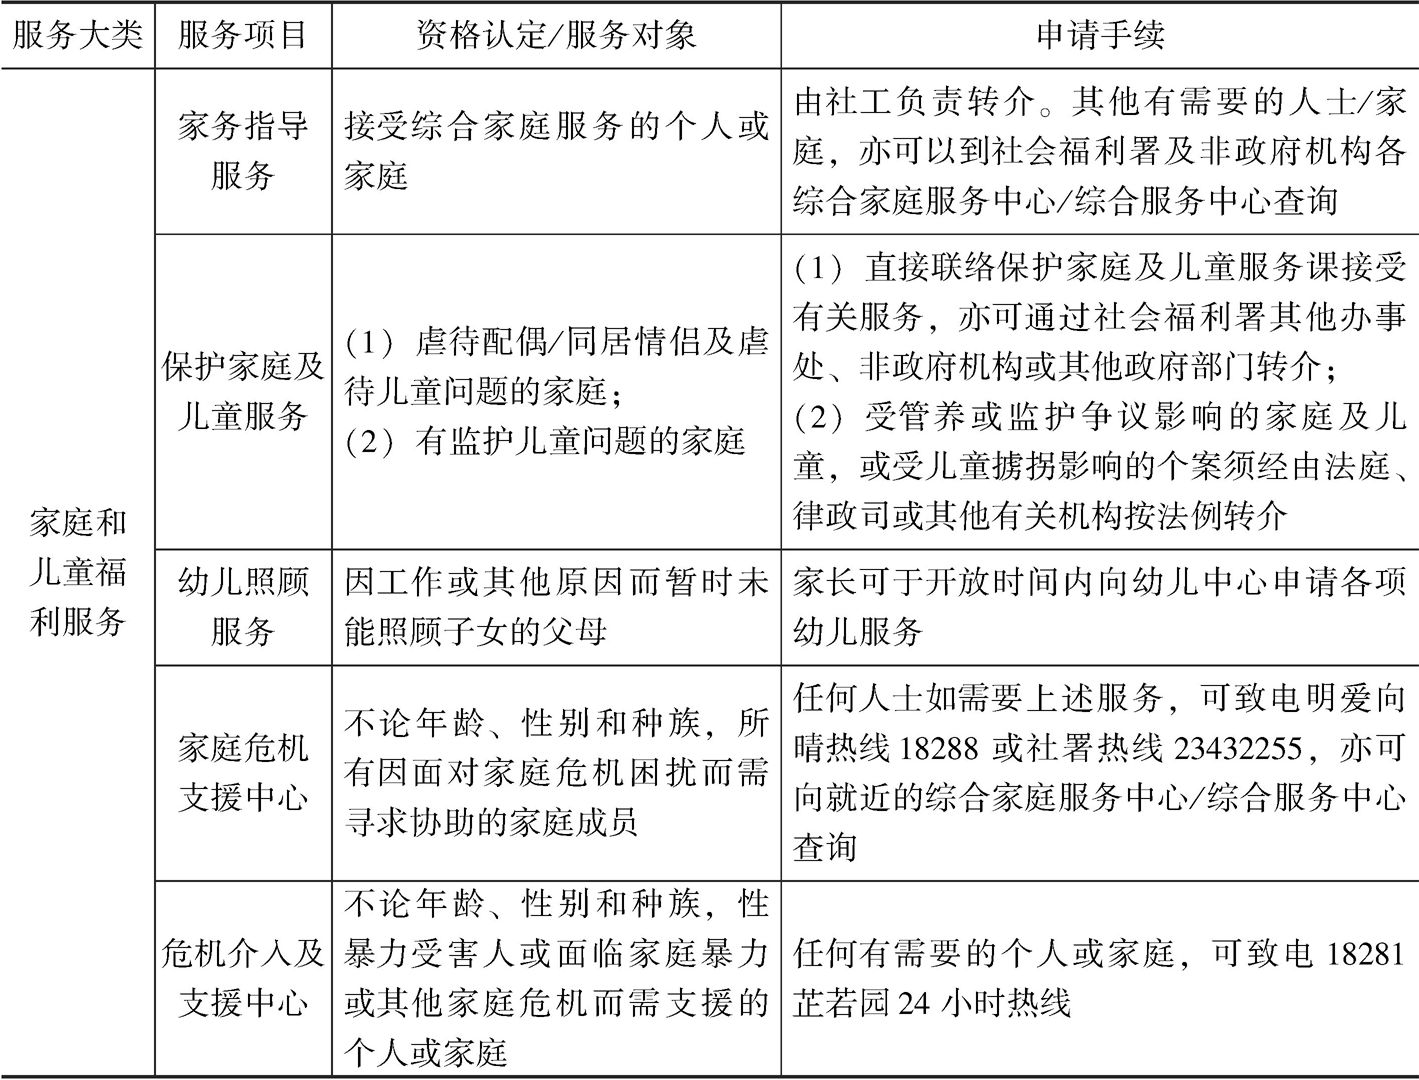 表9-4 香港部分社会服务对象资格认定和申请程序